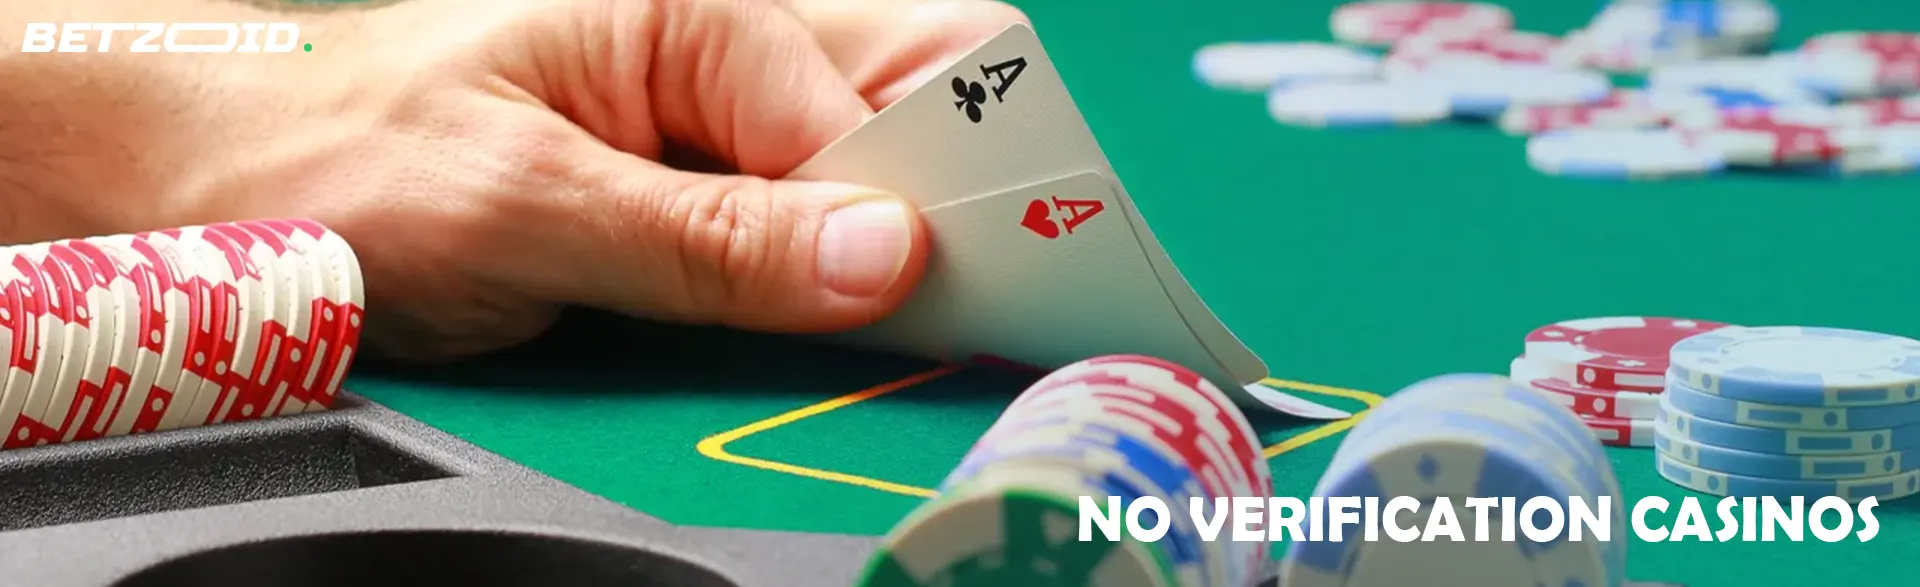 No Verification Casinos.